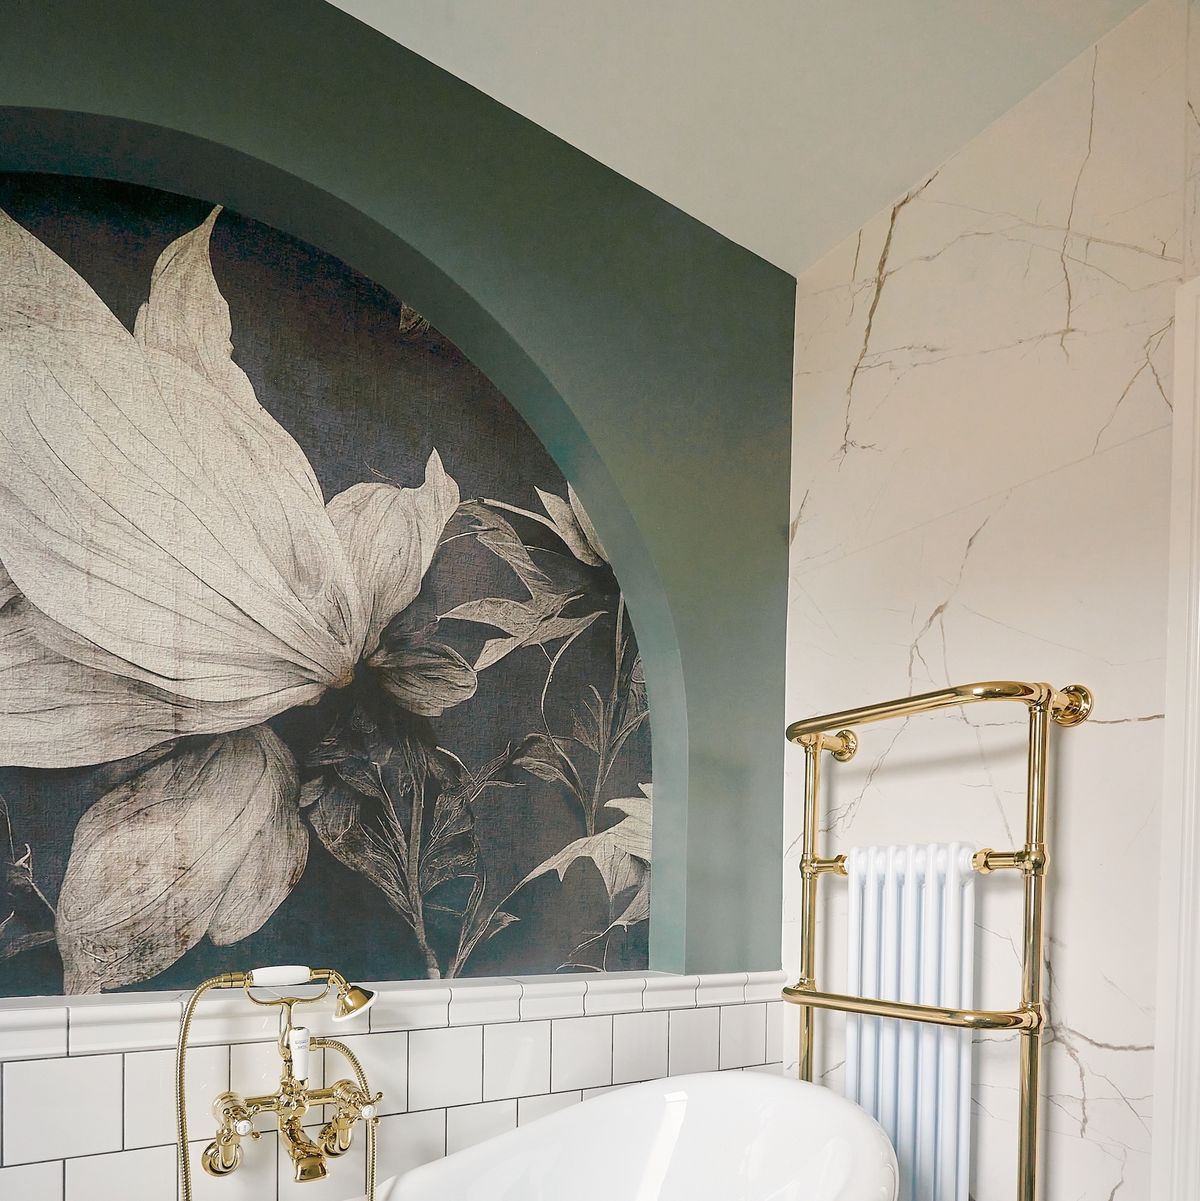 14 Design Ideas Using High-End Brass Bathroom Fixtures